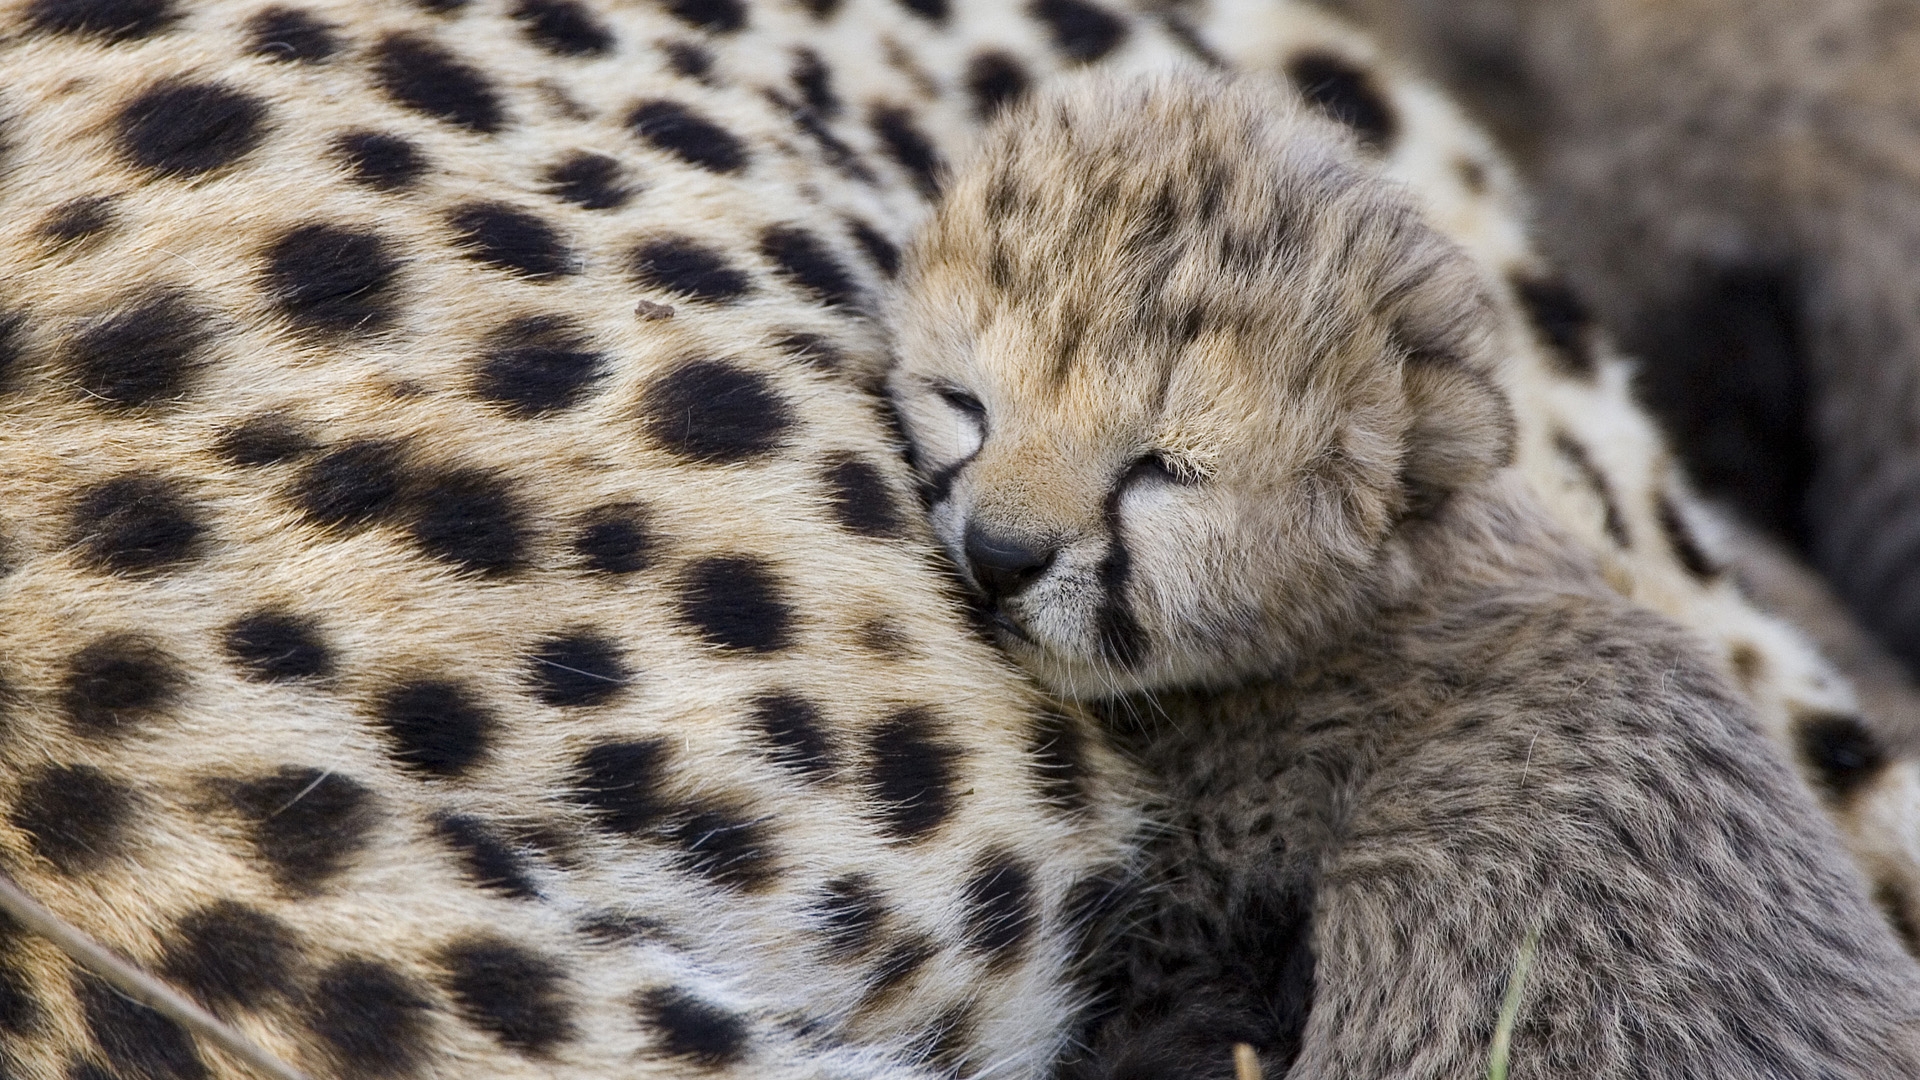 Cute Baby Cheetah Wallpaper Px